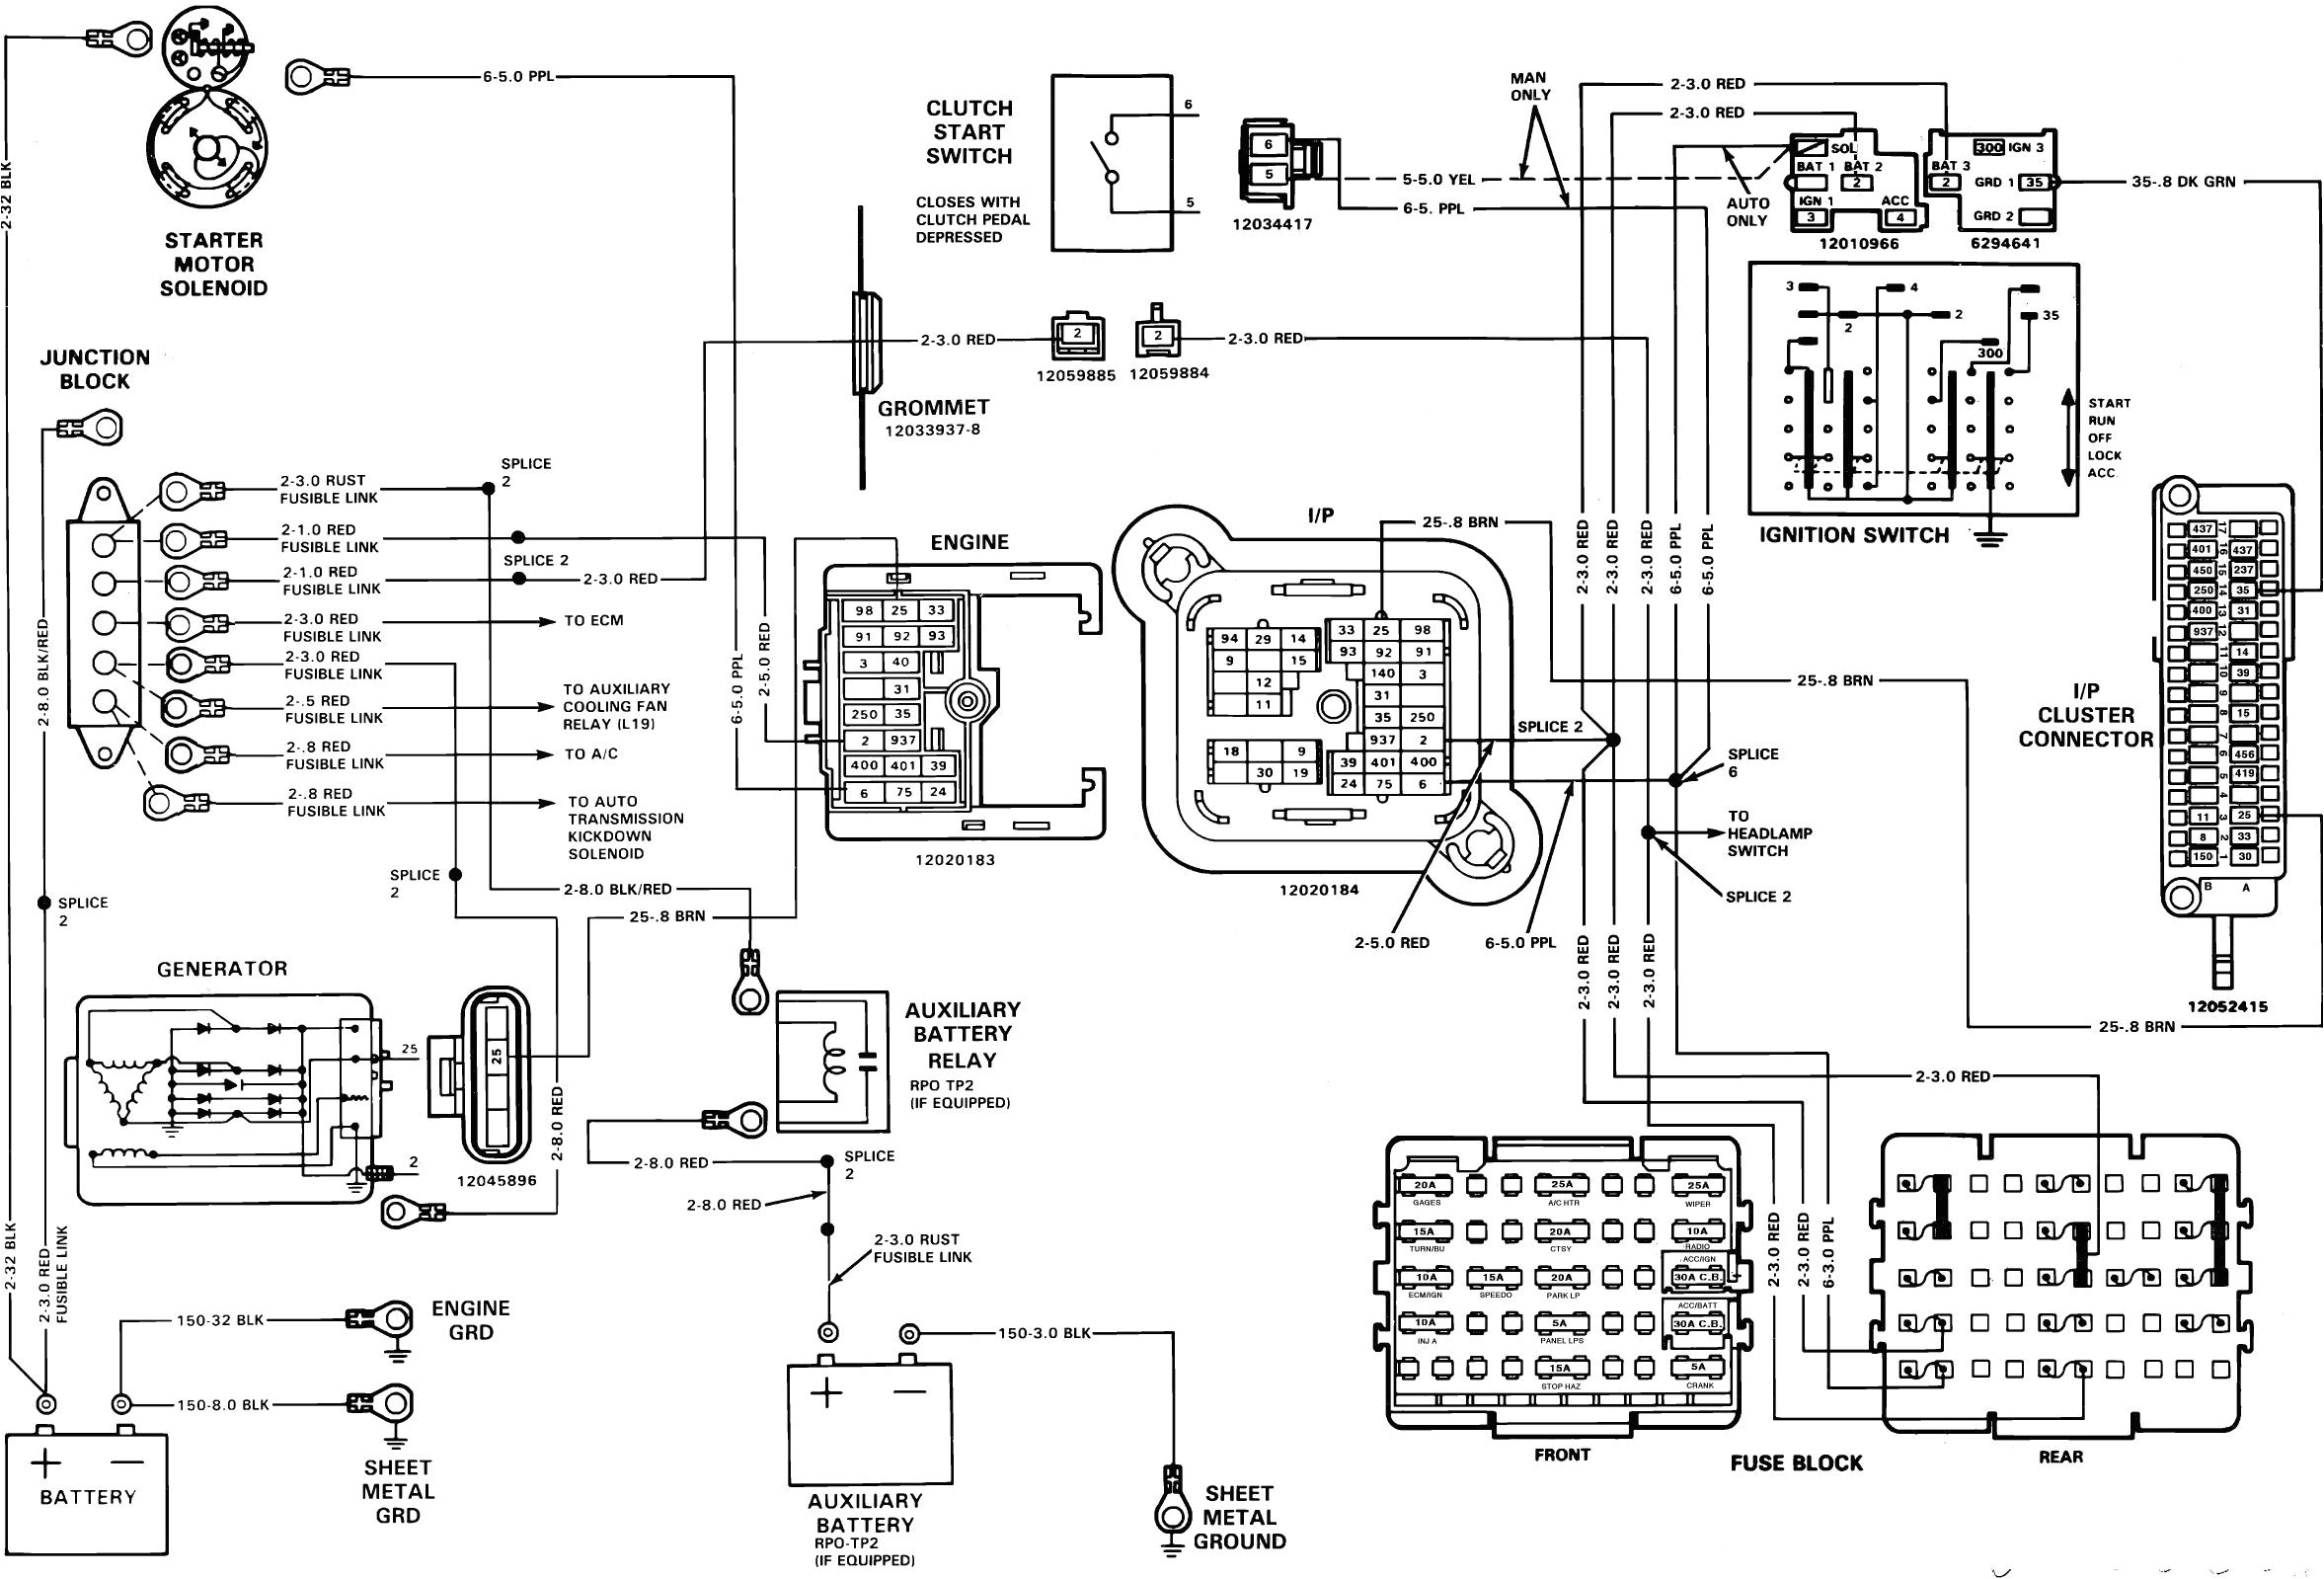 1989 gmc wiring diagrams blog wiring diagram wiring diagram for 1989 gmc pickup 1989 gmc wiring